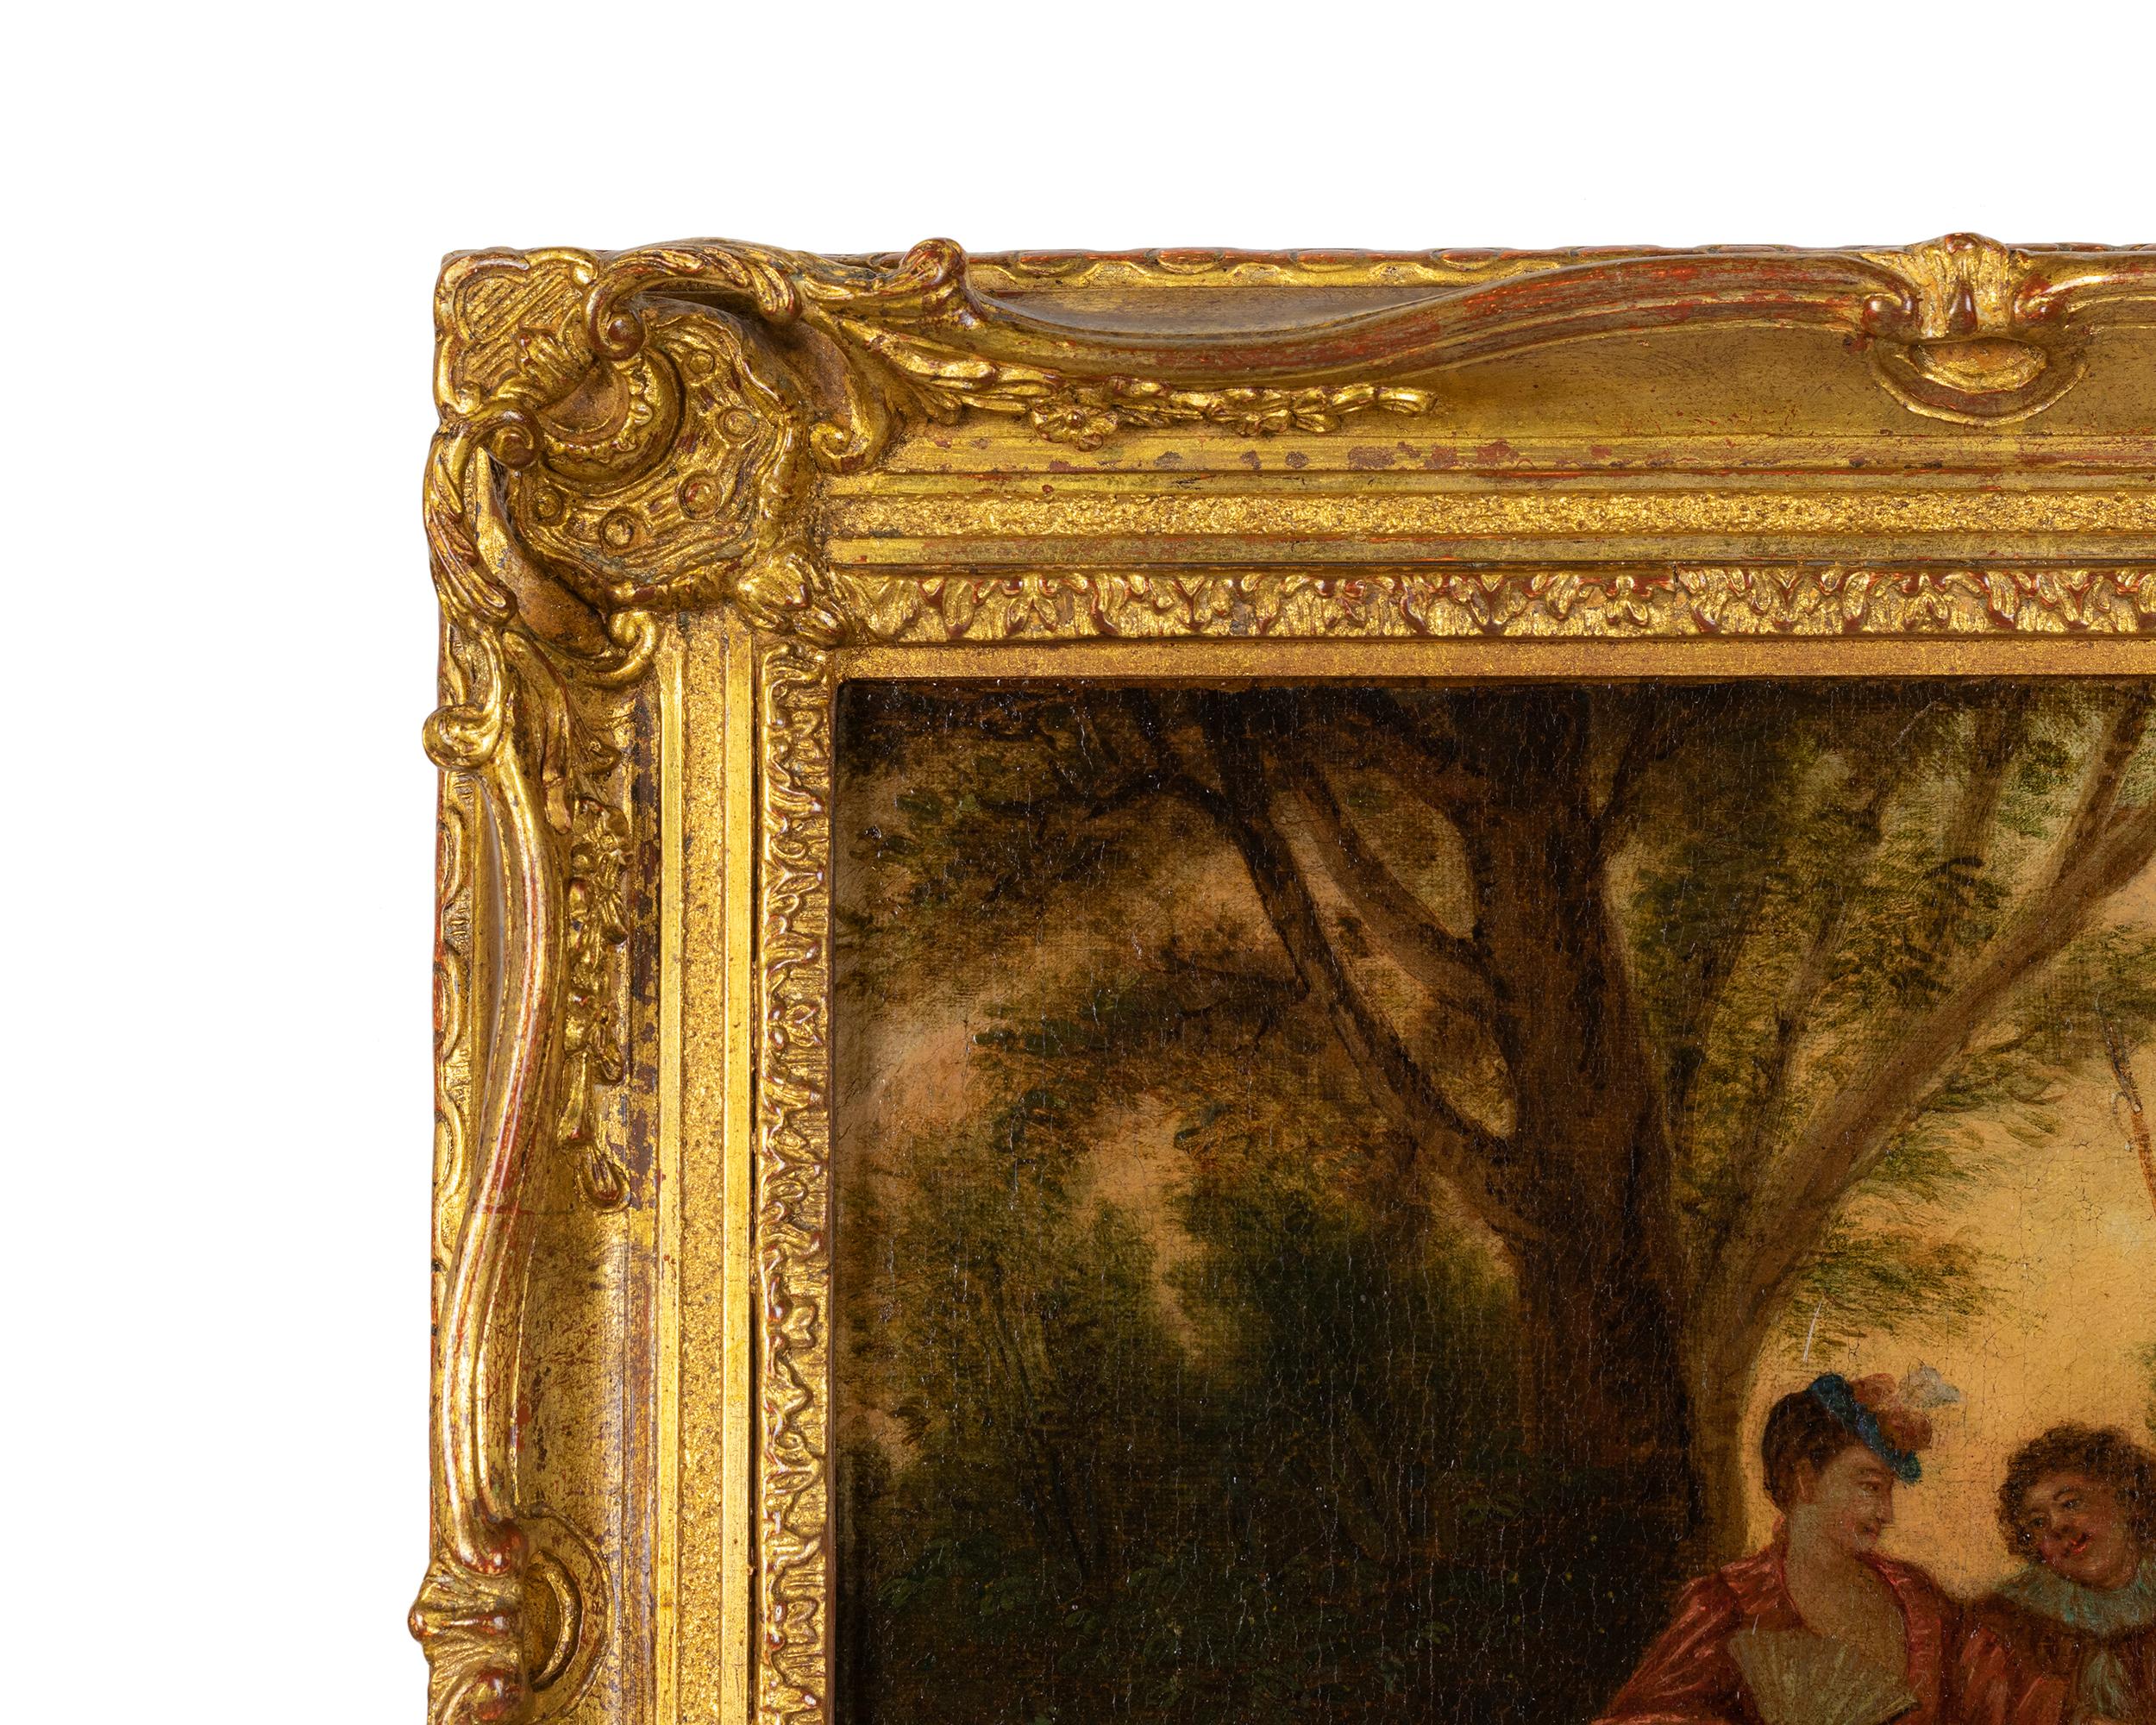 Peinture du XVIIIe siècle représentant une scène galante dans un parc. 
Attribuée avec le sceau de l'atelier du peintre à Philippe Mercier (1689 à 1760) du cercle du peintre français Nicolas Lancret, adepte de l'École d'Antoine Watteau.
Huile sur